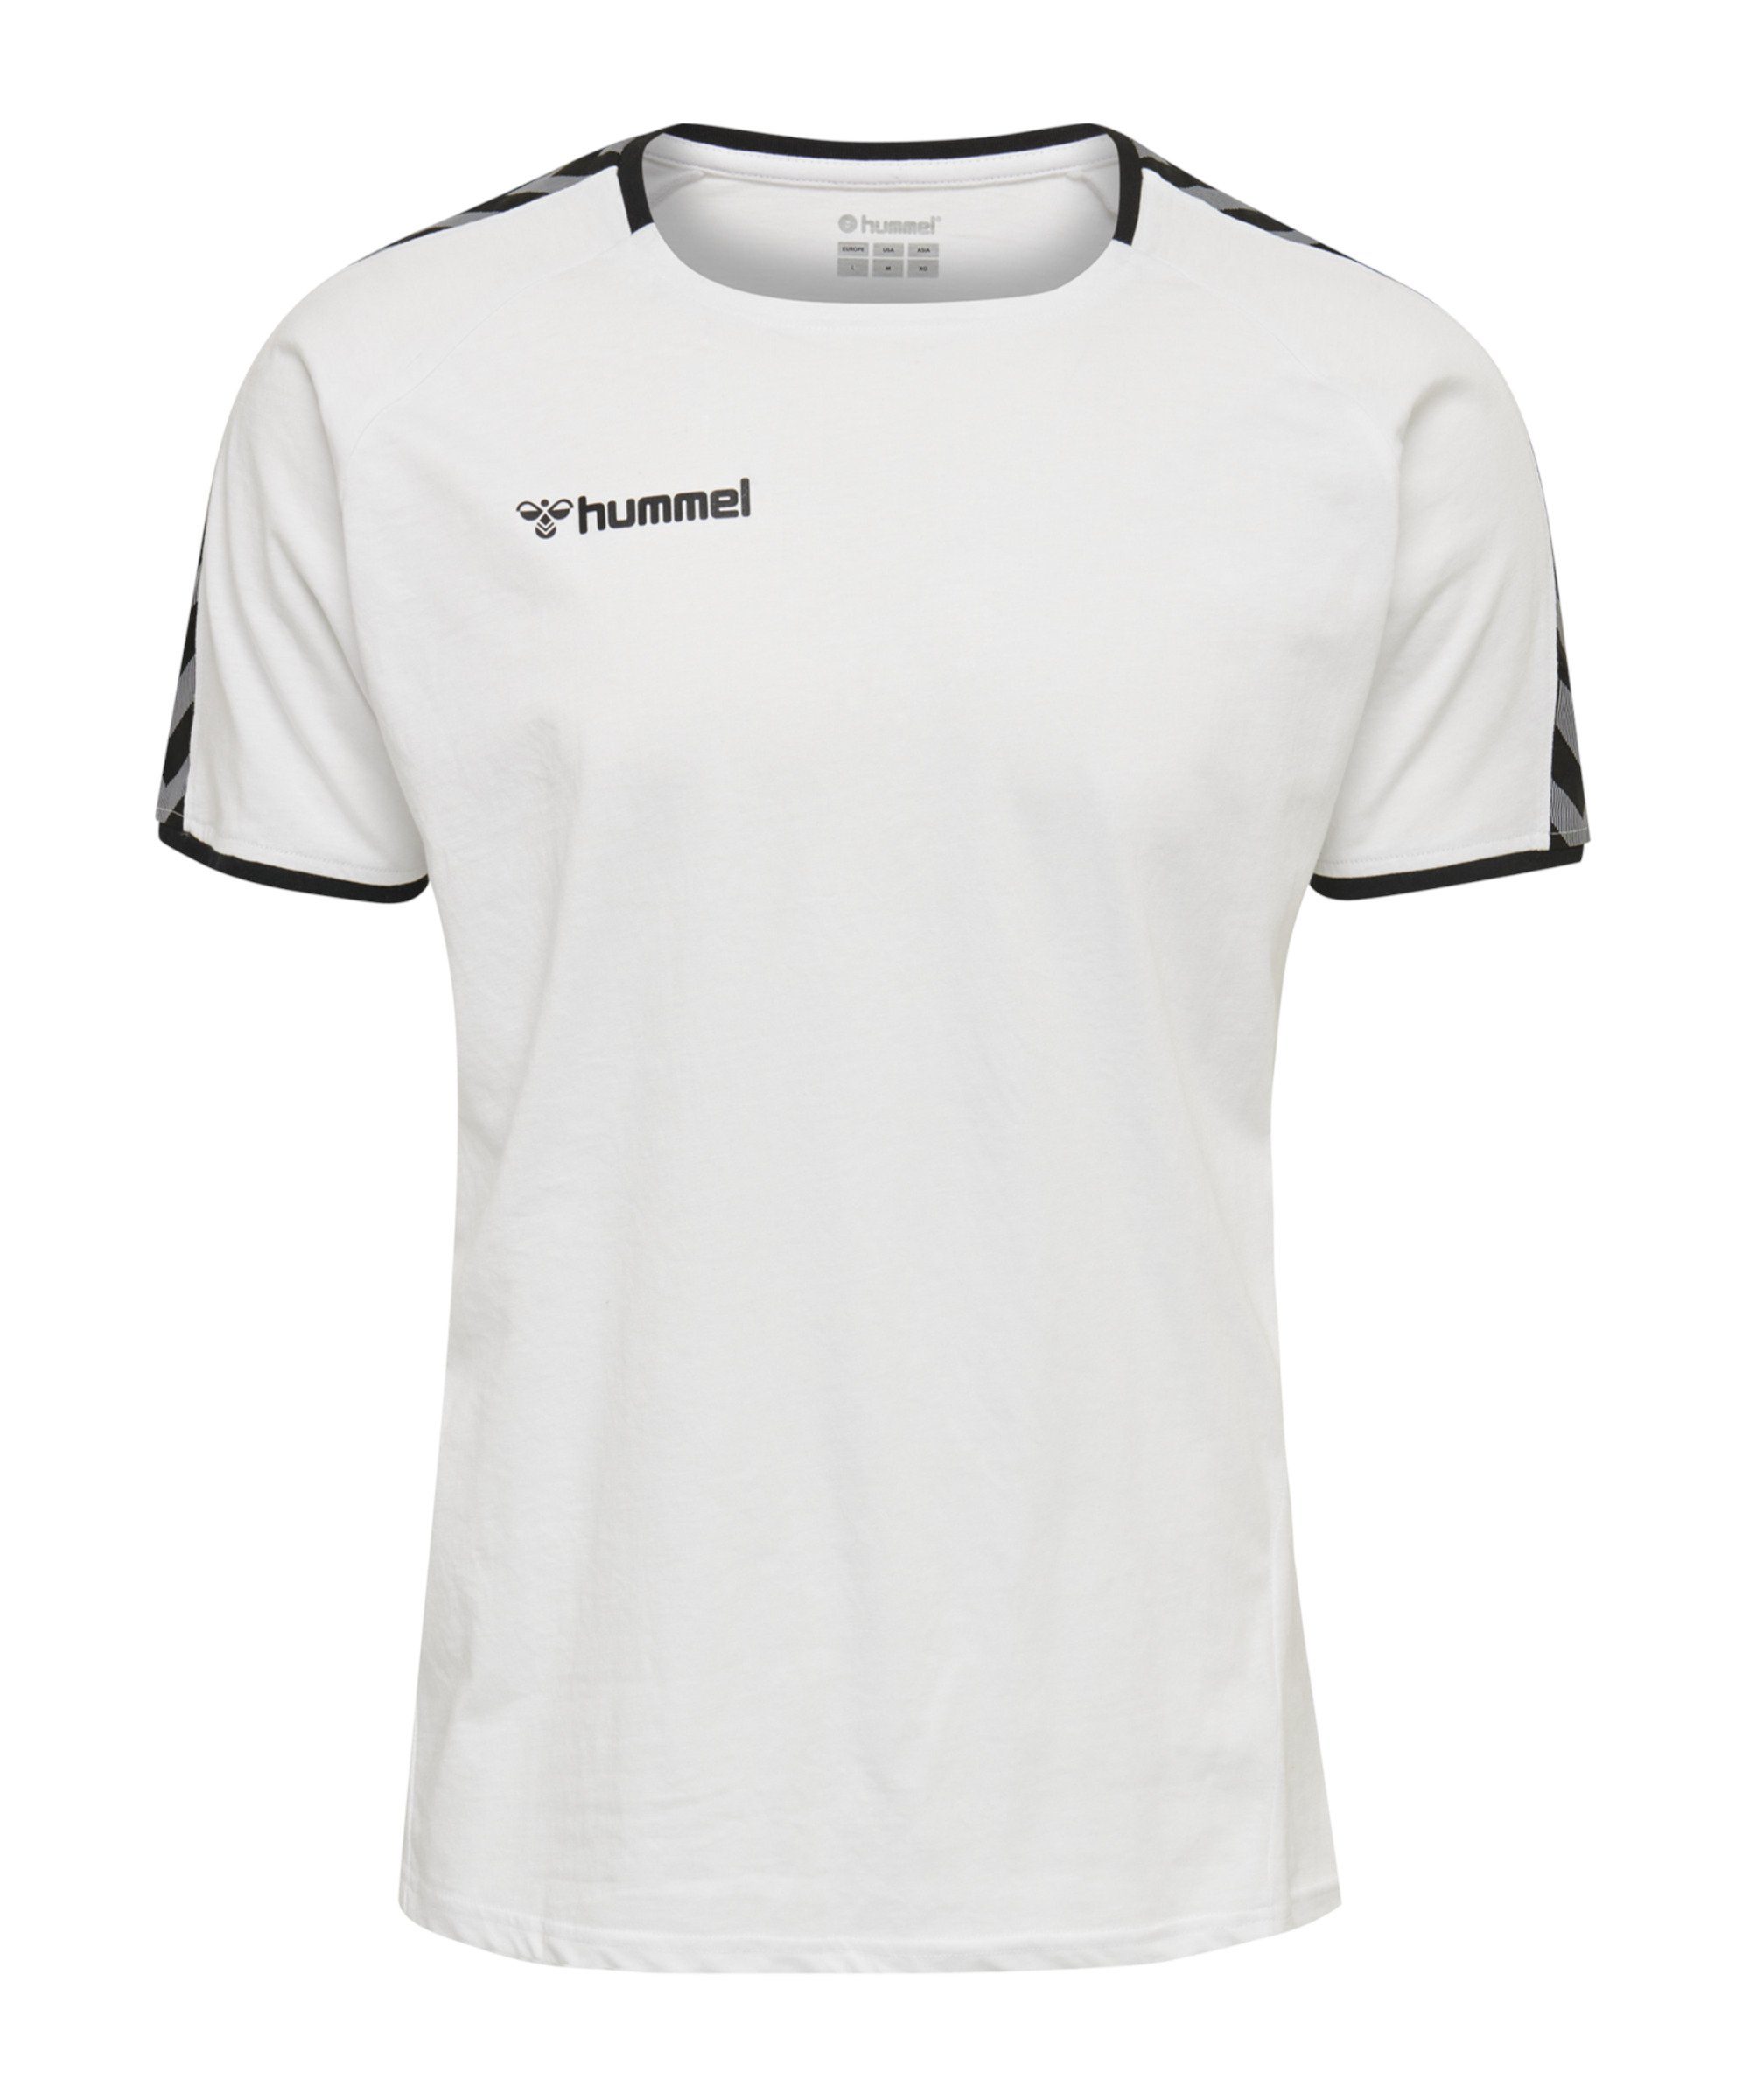 hummel T-Shirt Authentic Trainingsshirt Kids default